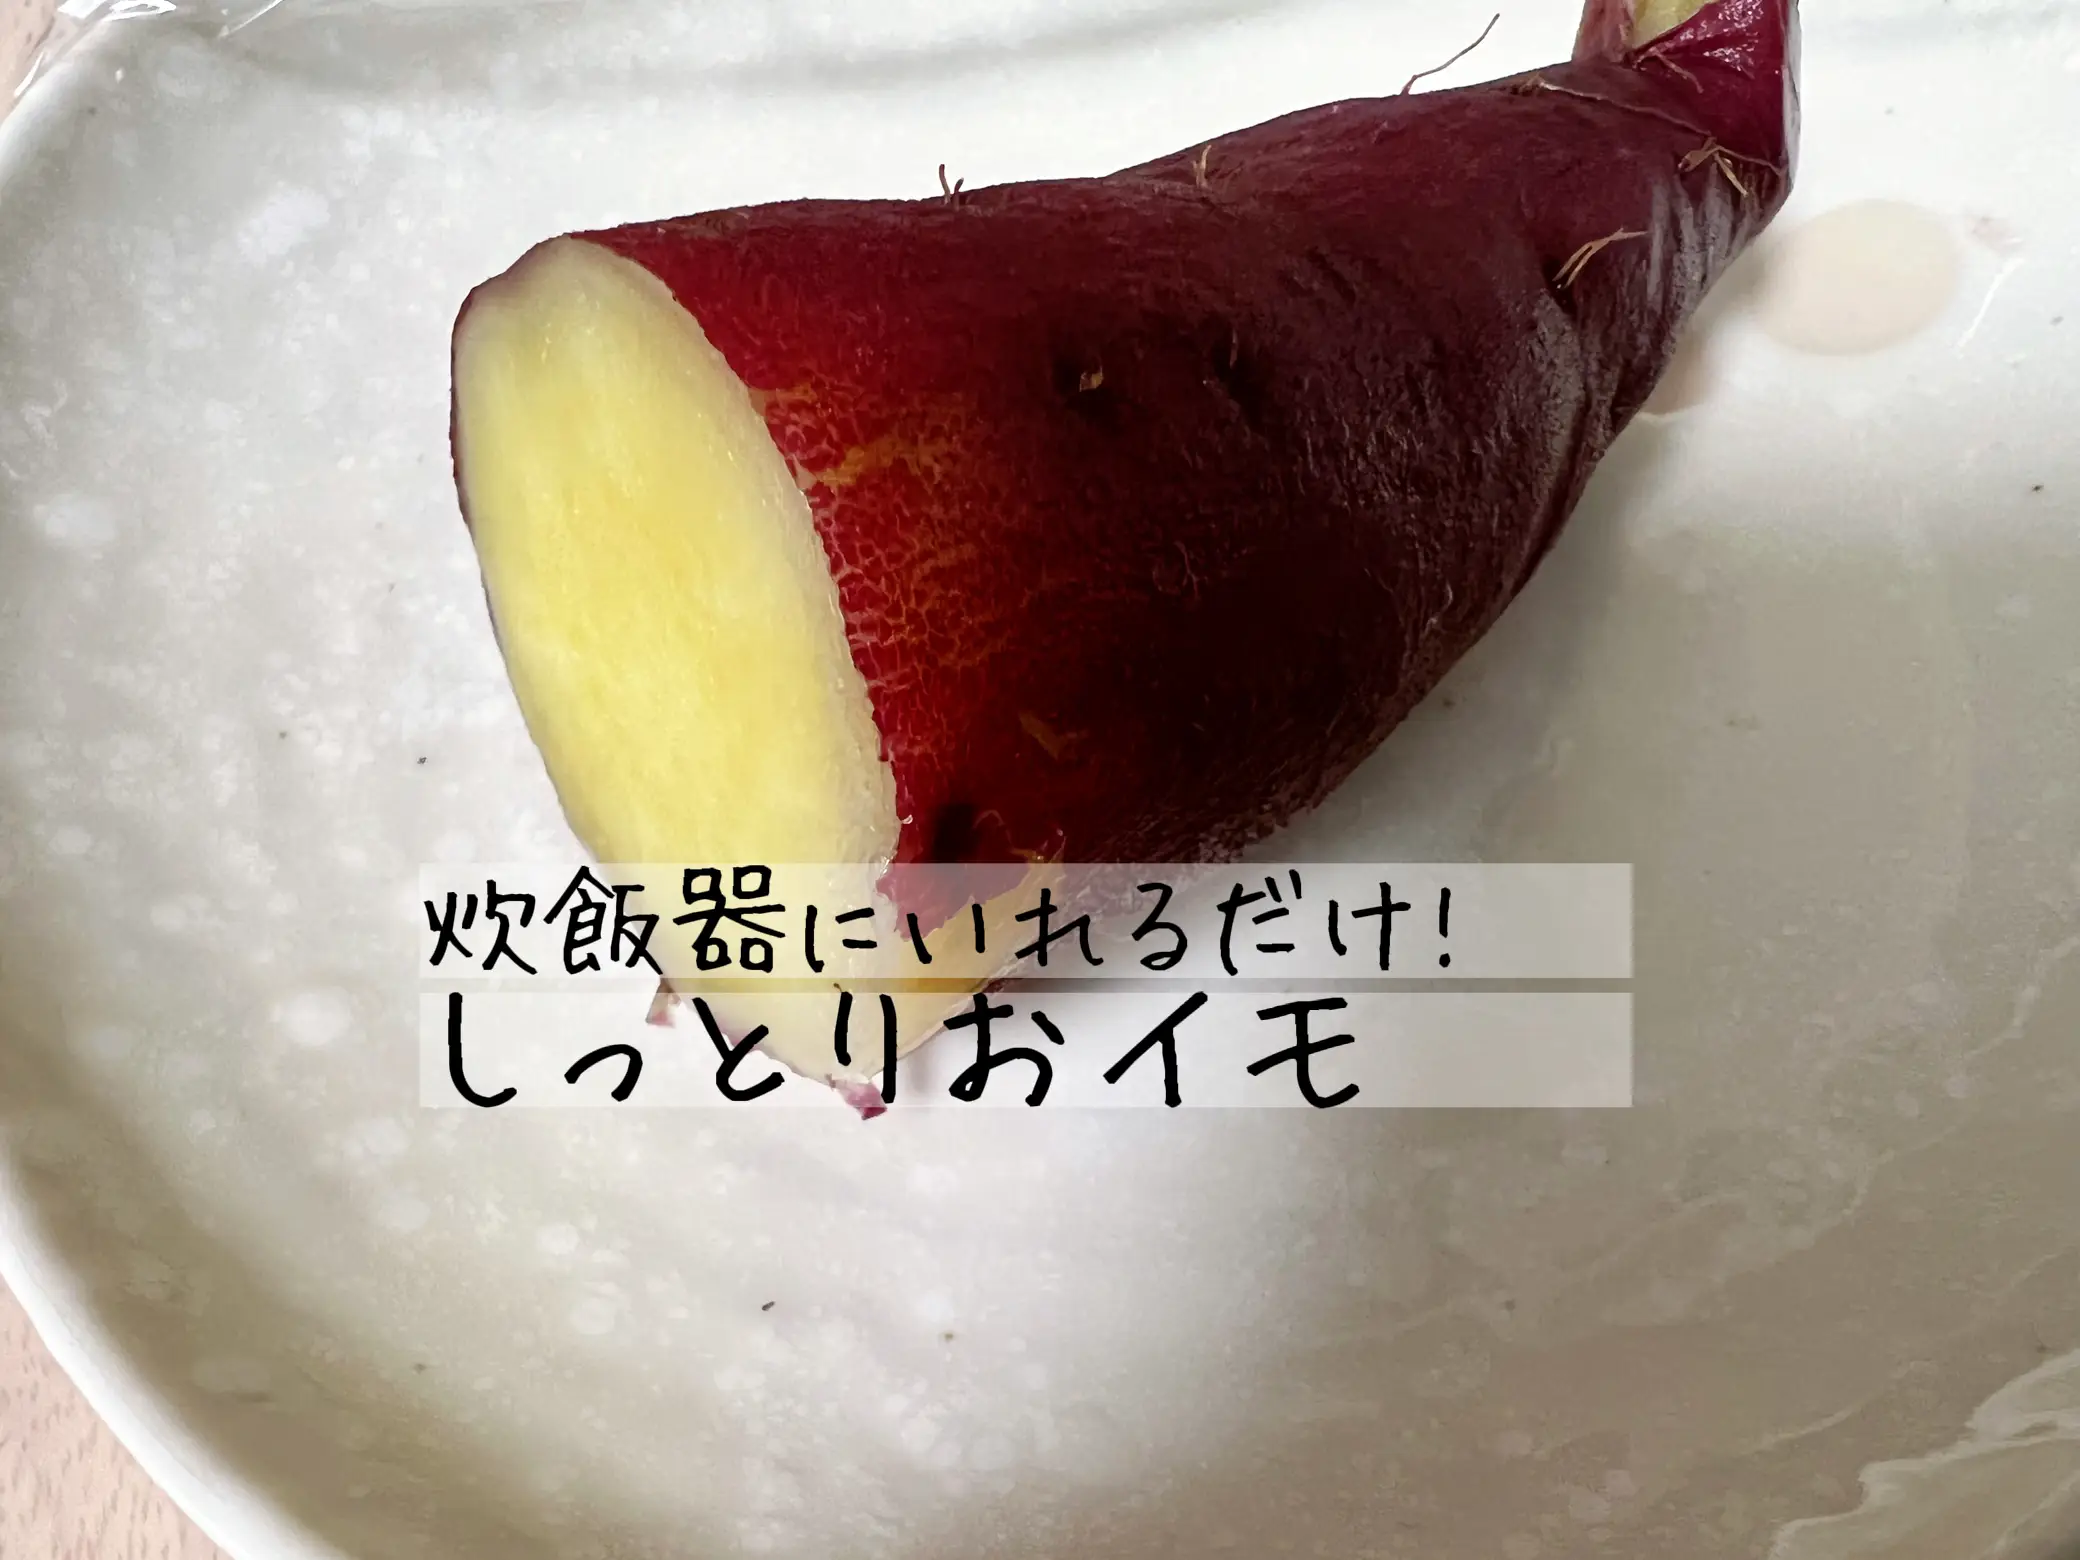 ダイエット芋けんぴ - Lemon8検索